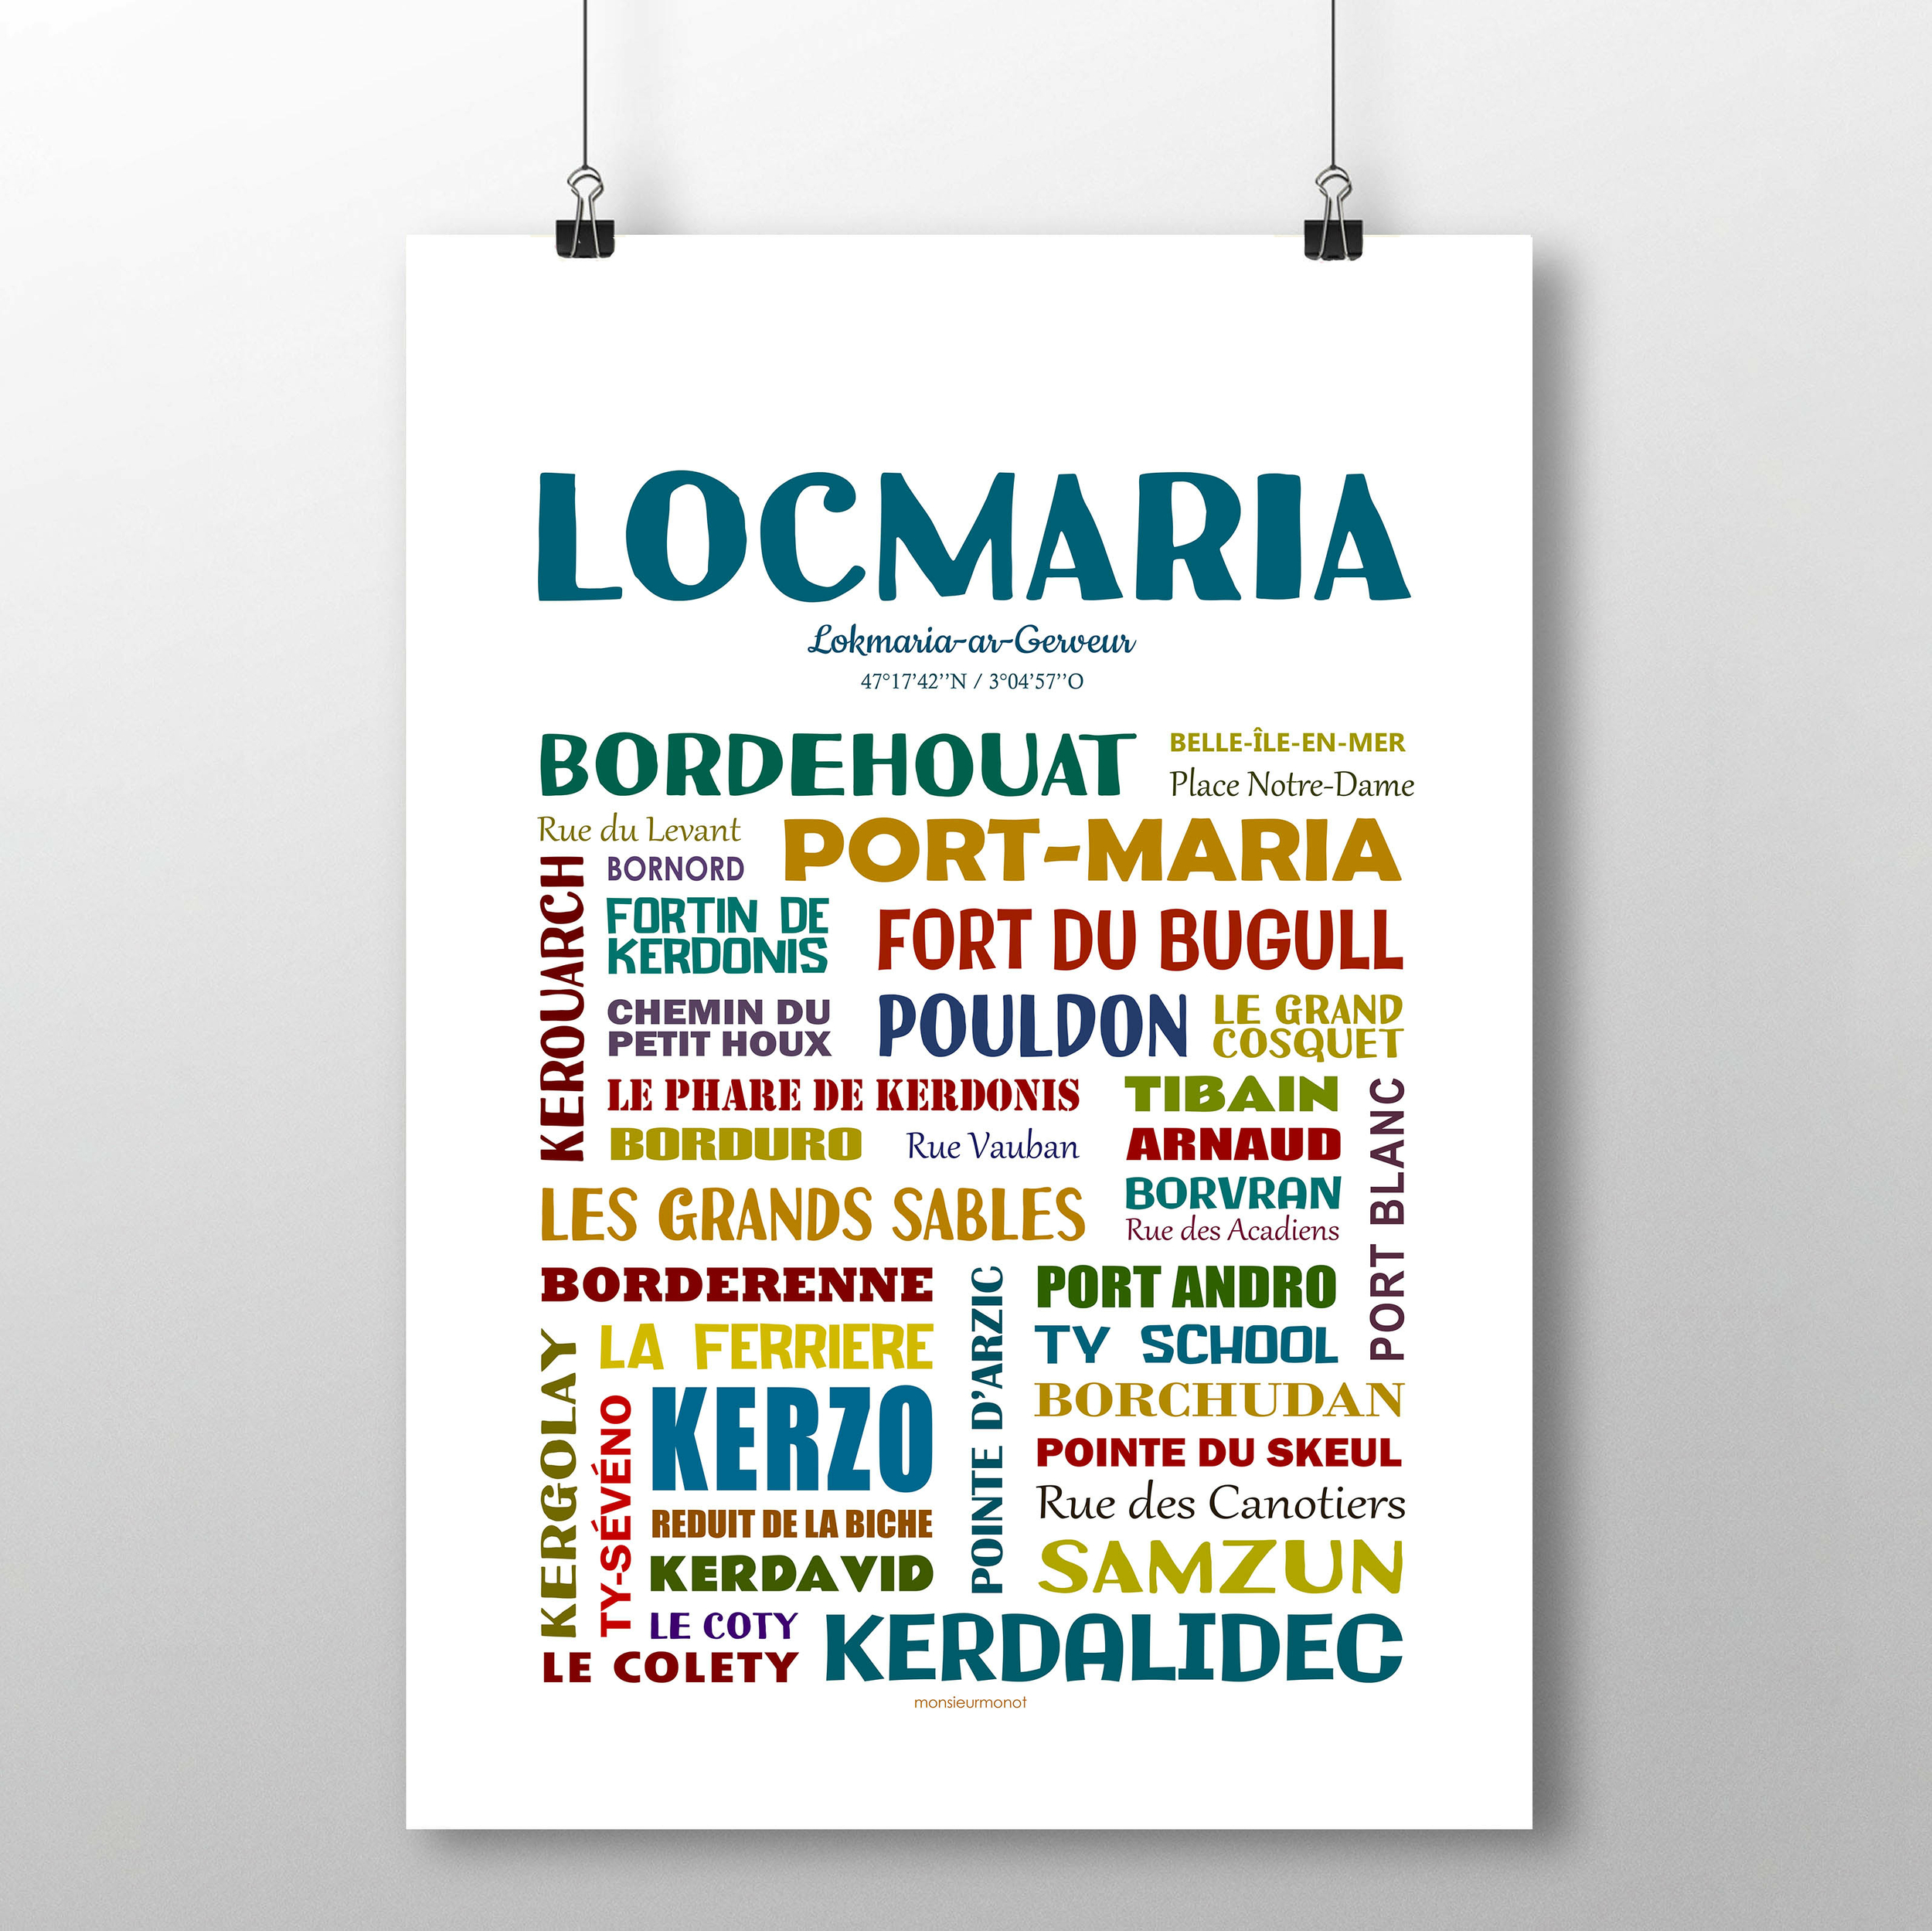 Locmaria 2